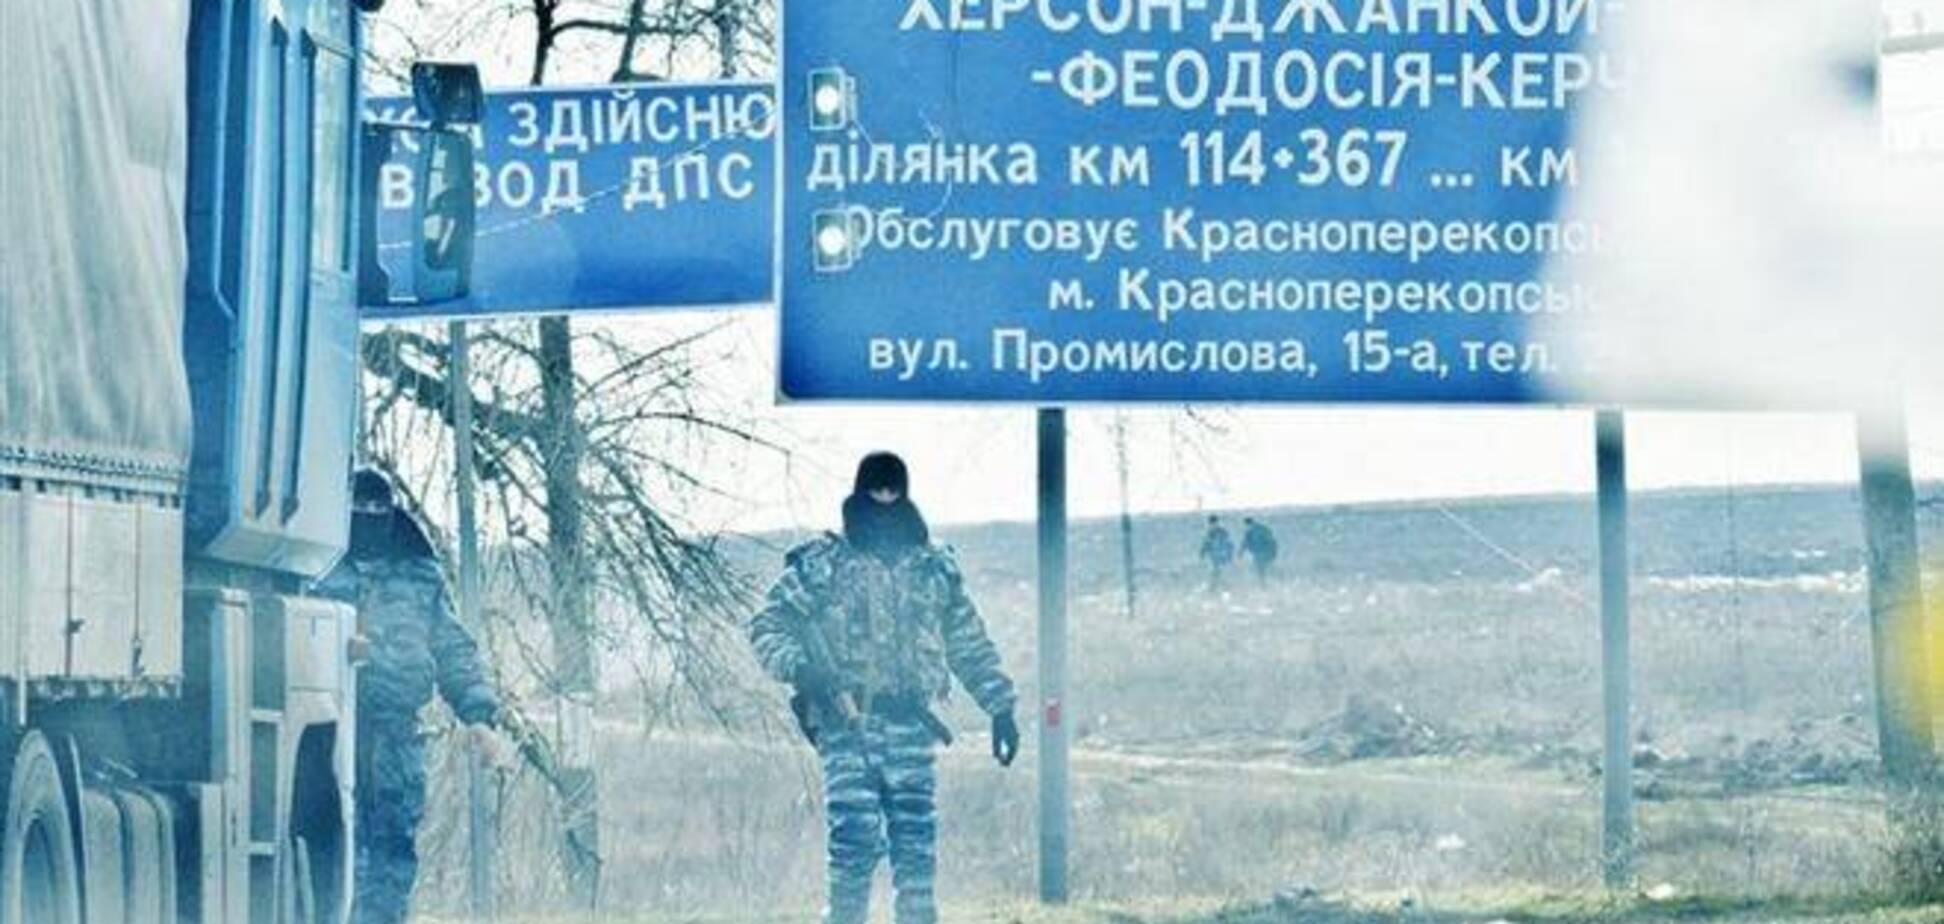 Въезд в Крым блокируют шесть БТРов